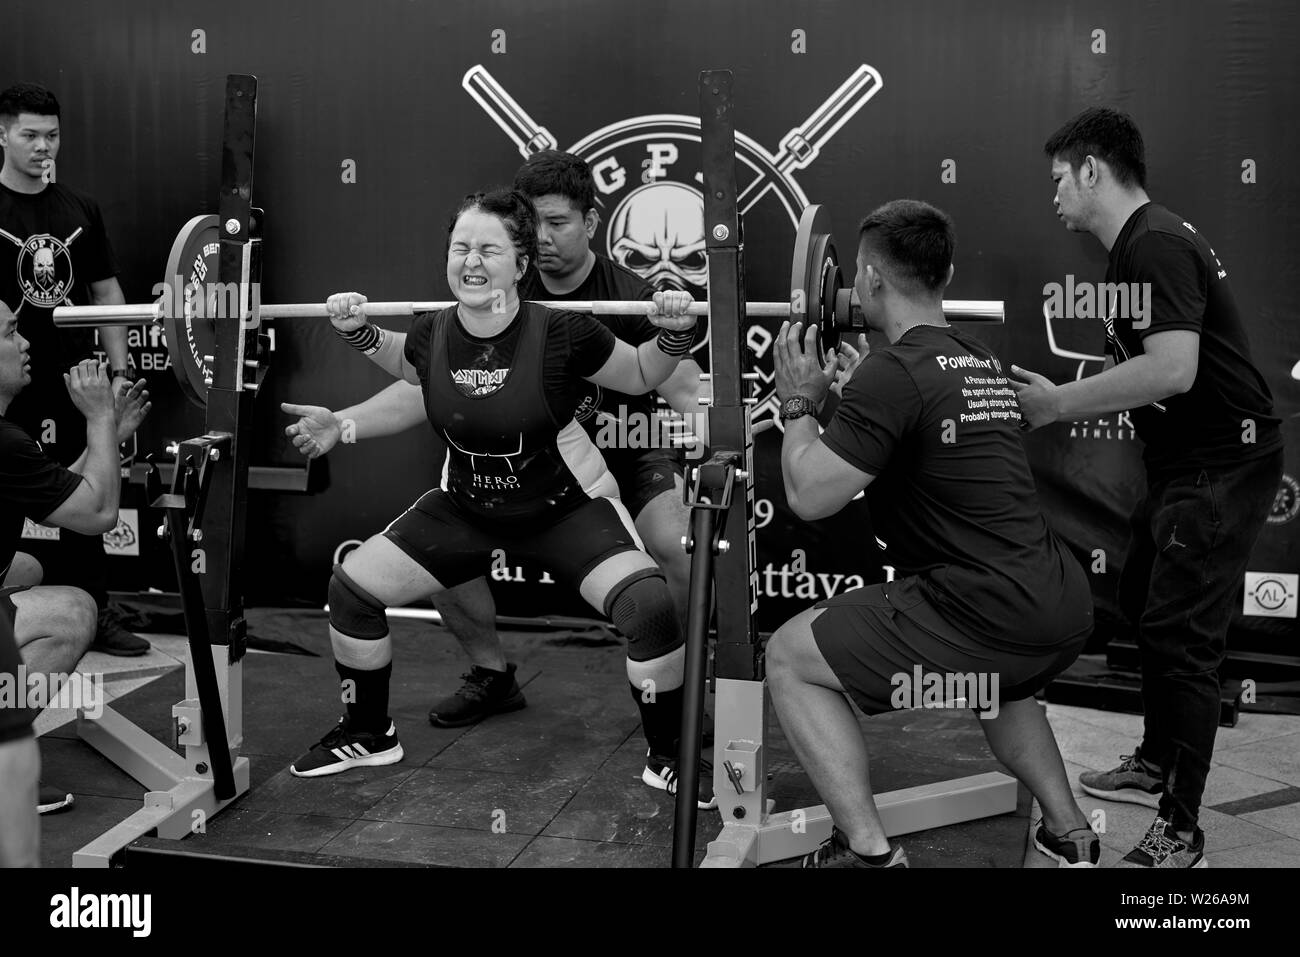 Power lifting femmina concorrente che partecipa a una competizione di sollevamento pesi a Pattaya Thailandia Sud-Est asiatico Foto Stock